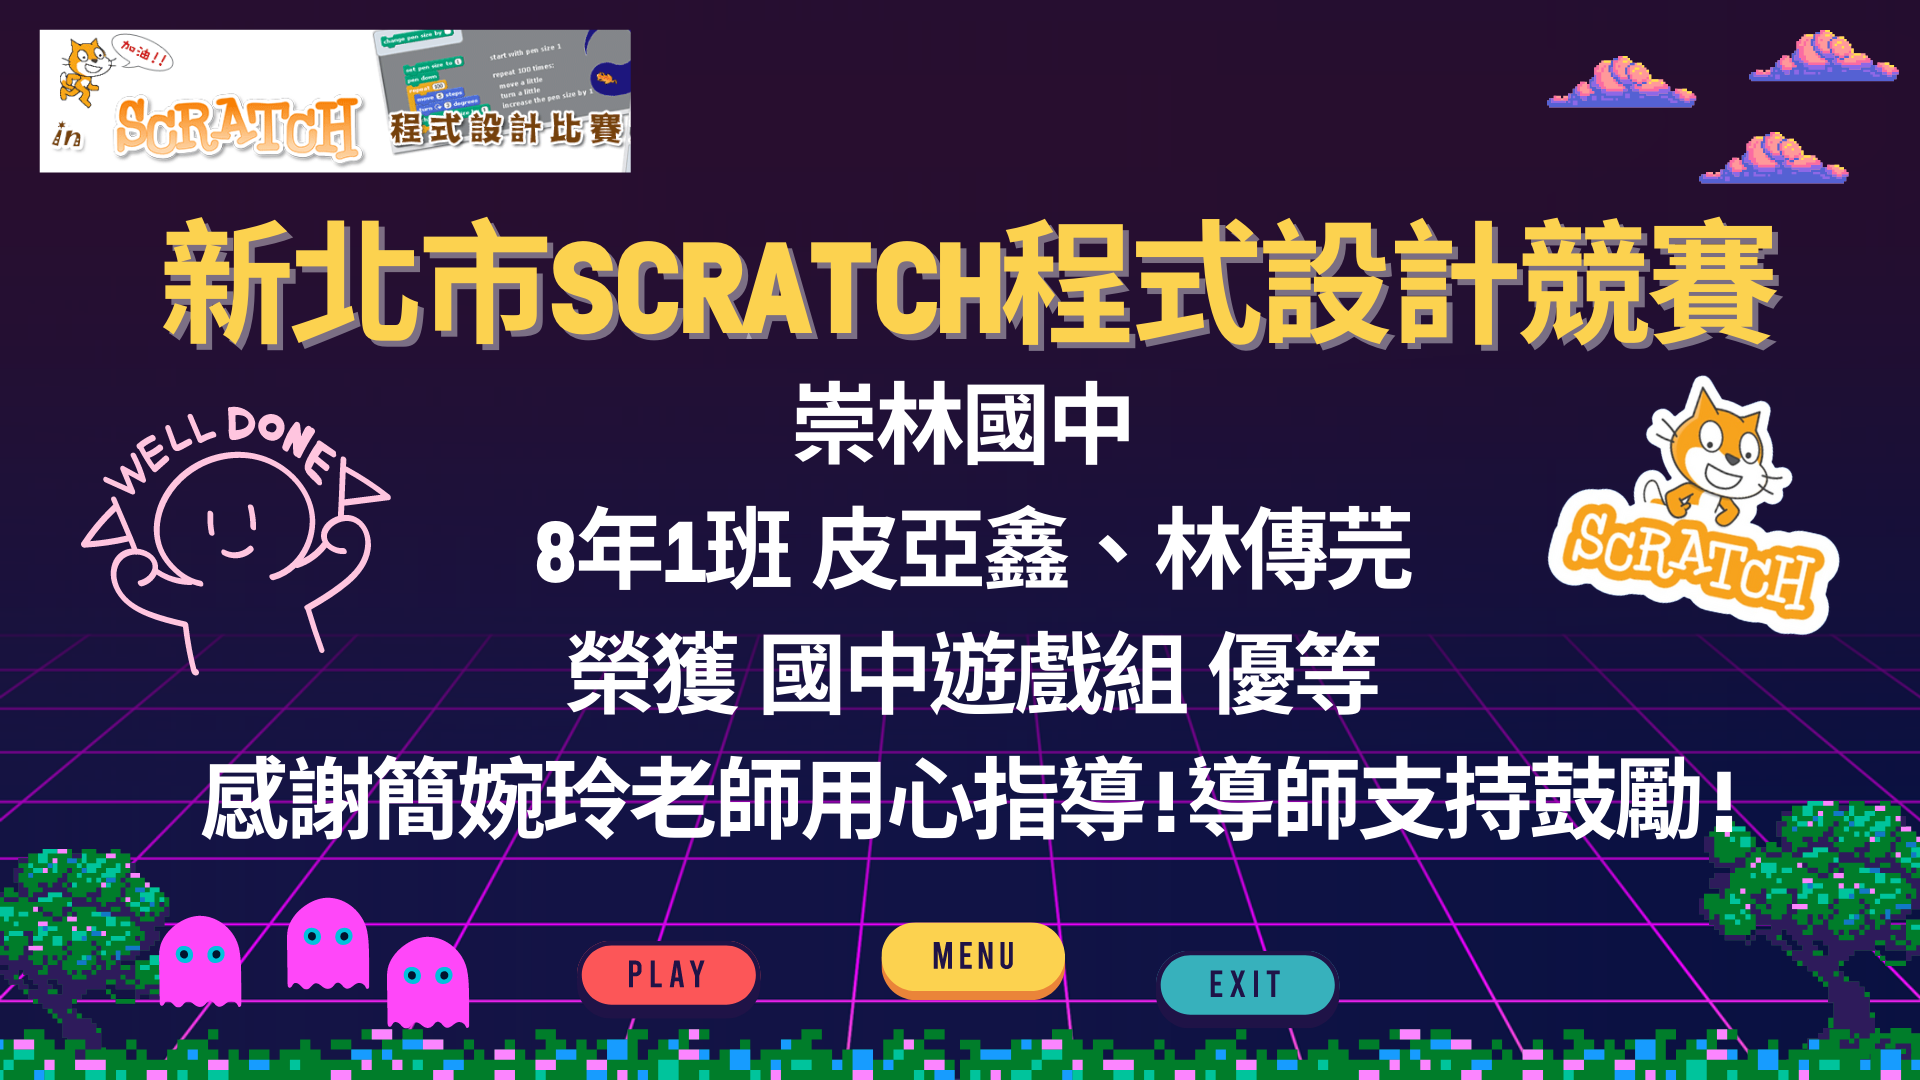 賀111學年新北市SCRATCH程式設計競賽崇林國中榮獲佳績!!!